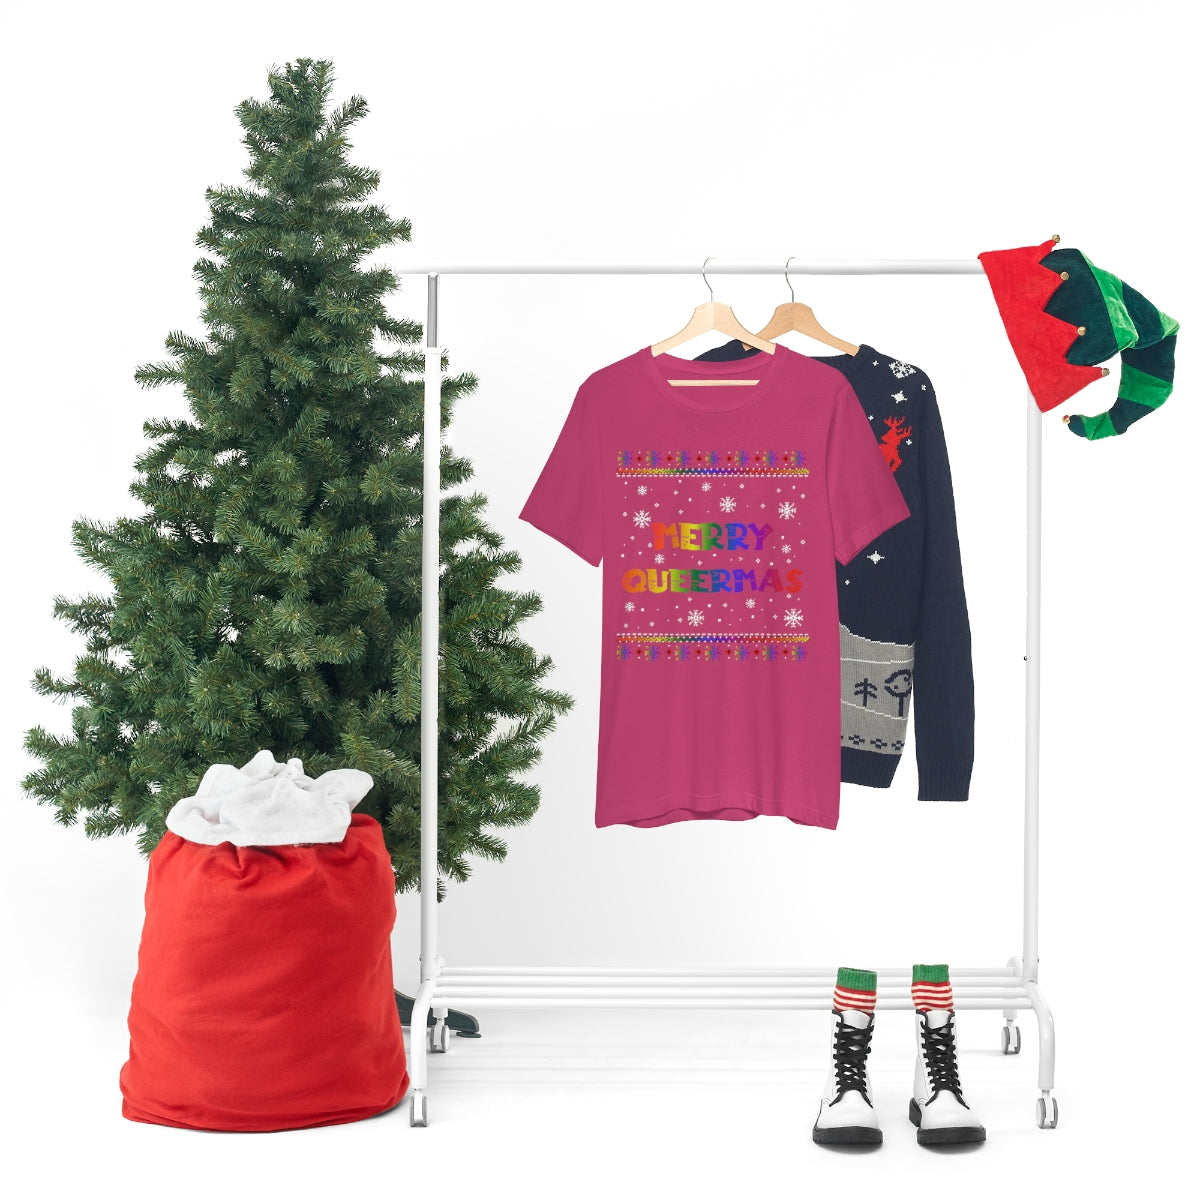 Classic Unisex Christmas LGBTQ T-Shirt - Merry Queermas Printify